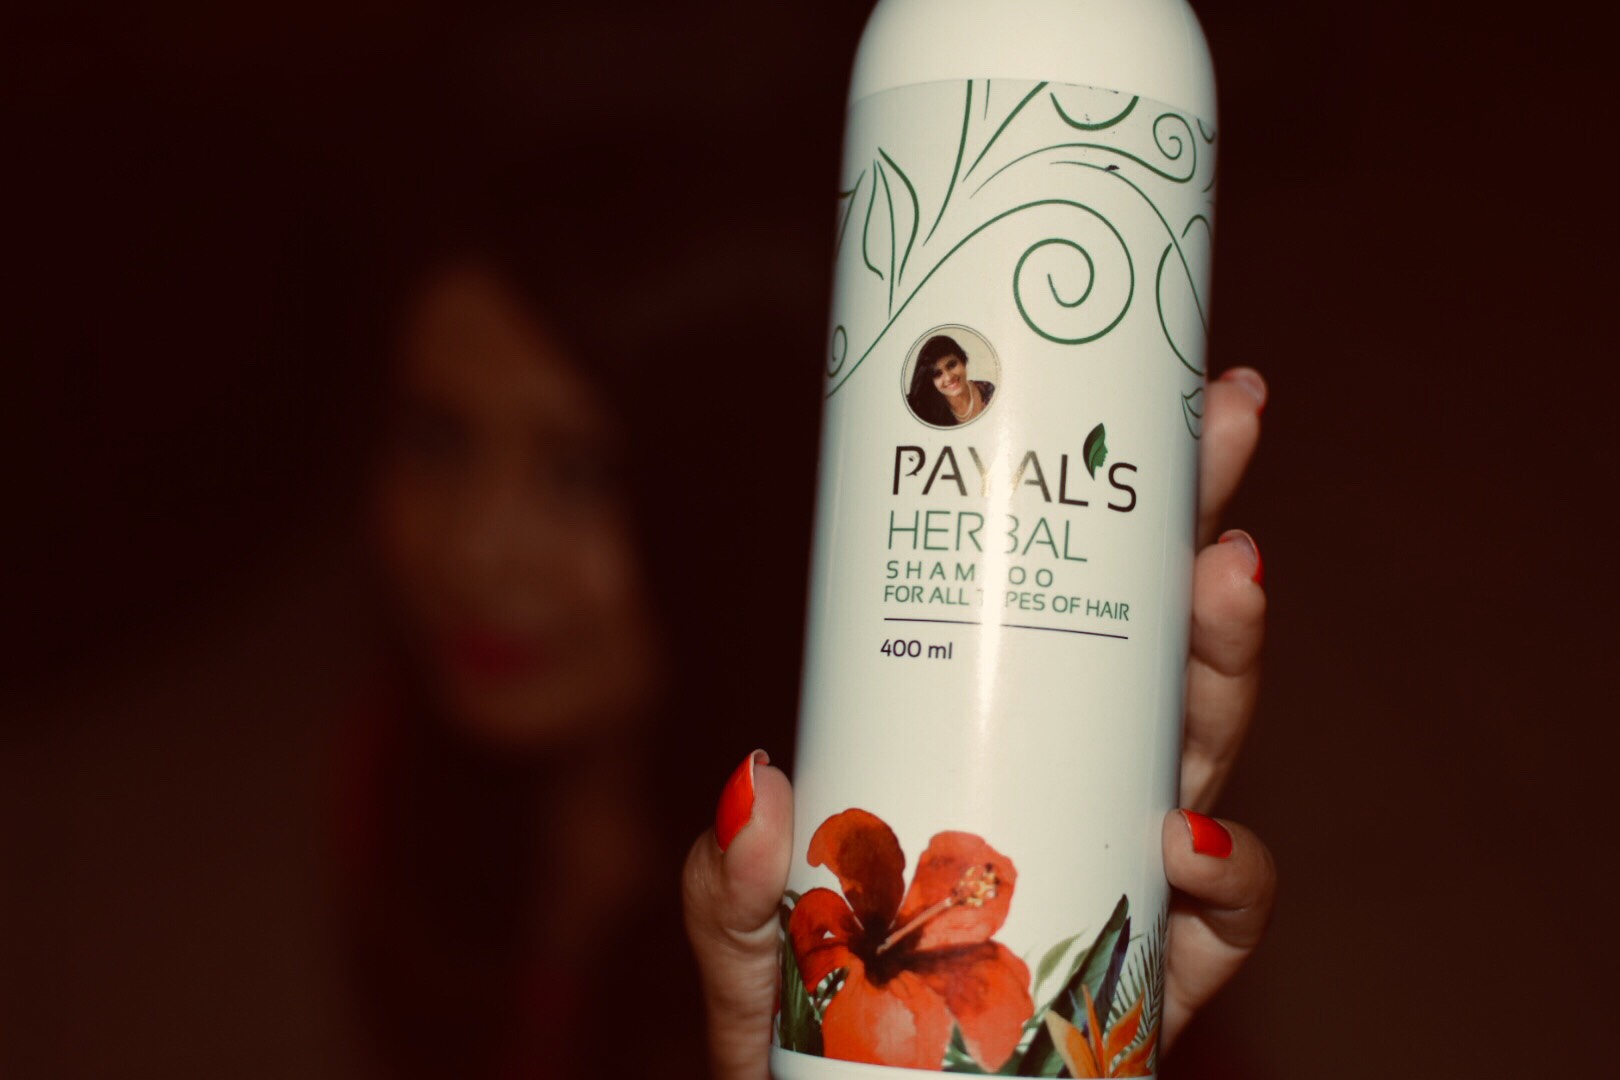  Payal's Herbal Shampoo